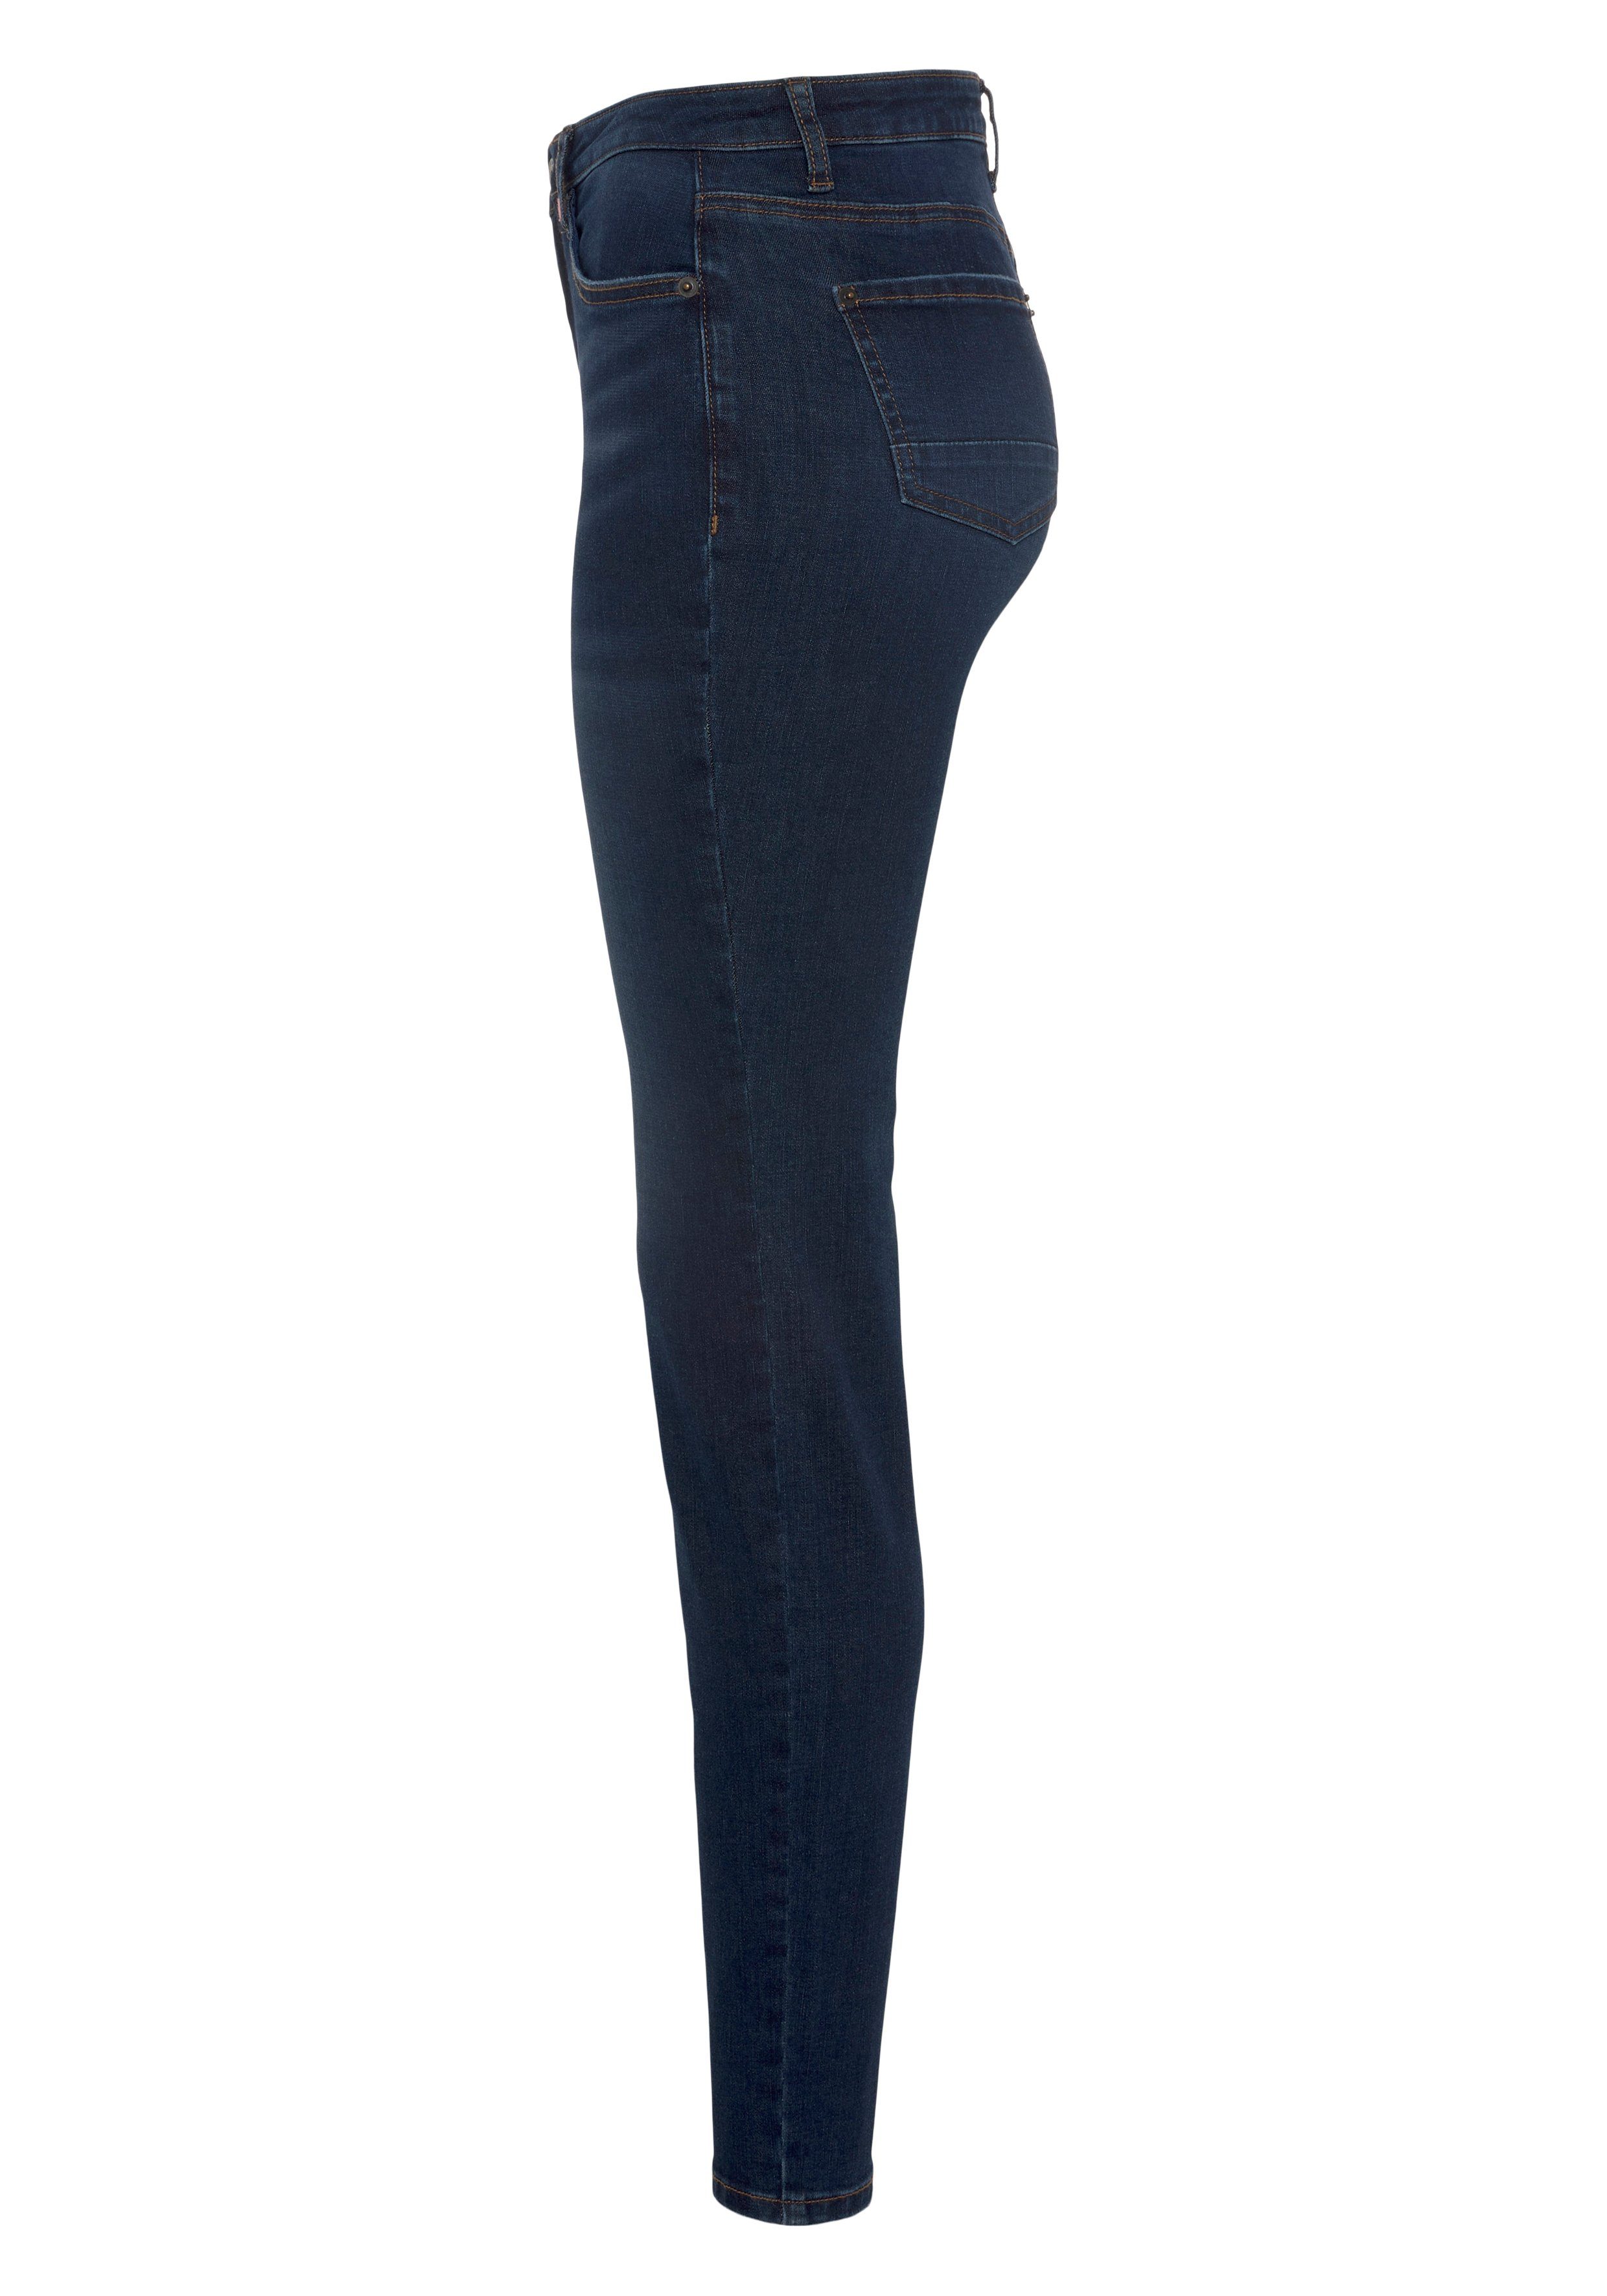 Alife & Kickin High-waist-Jeans Slim-Fit blue used KOLLEKTION NEUE NolaAK dark used